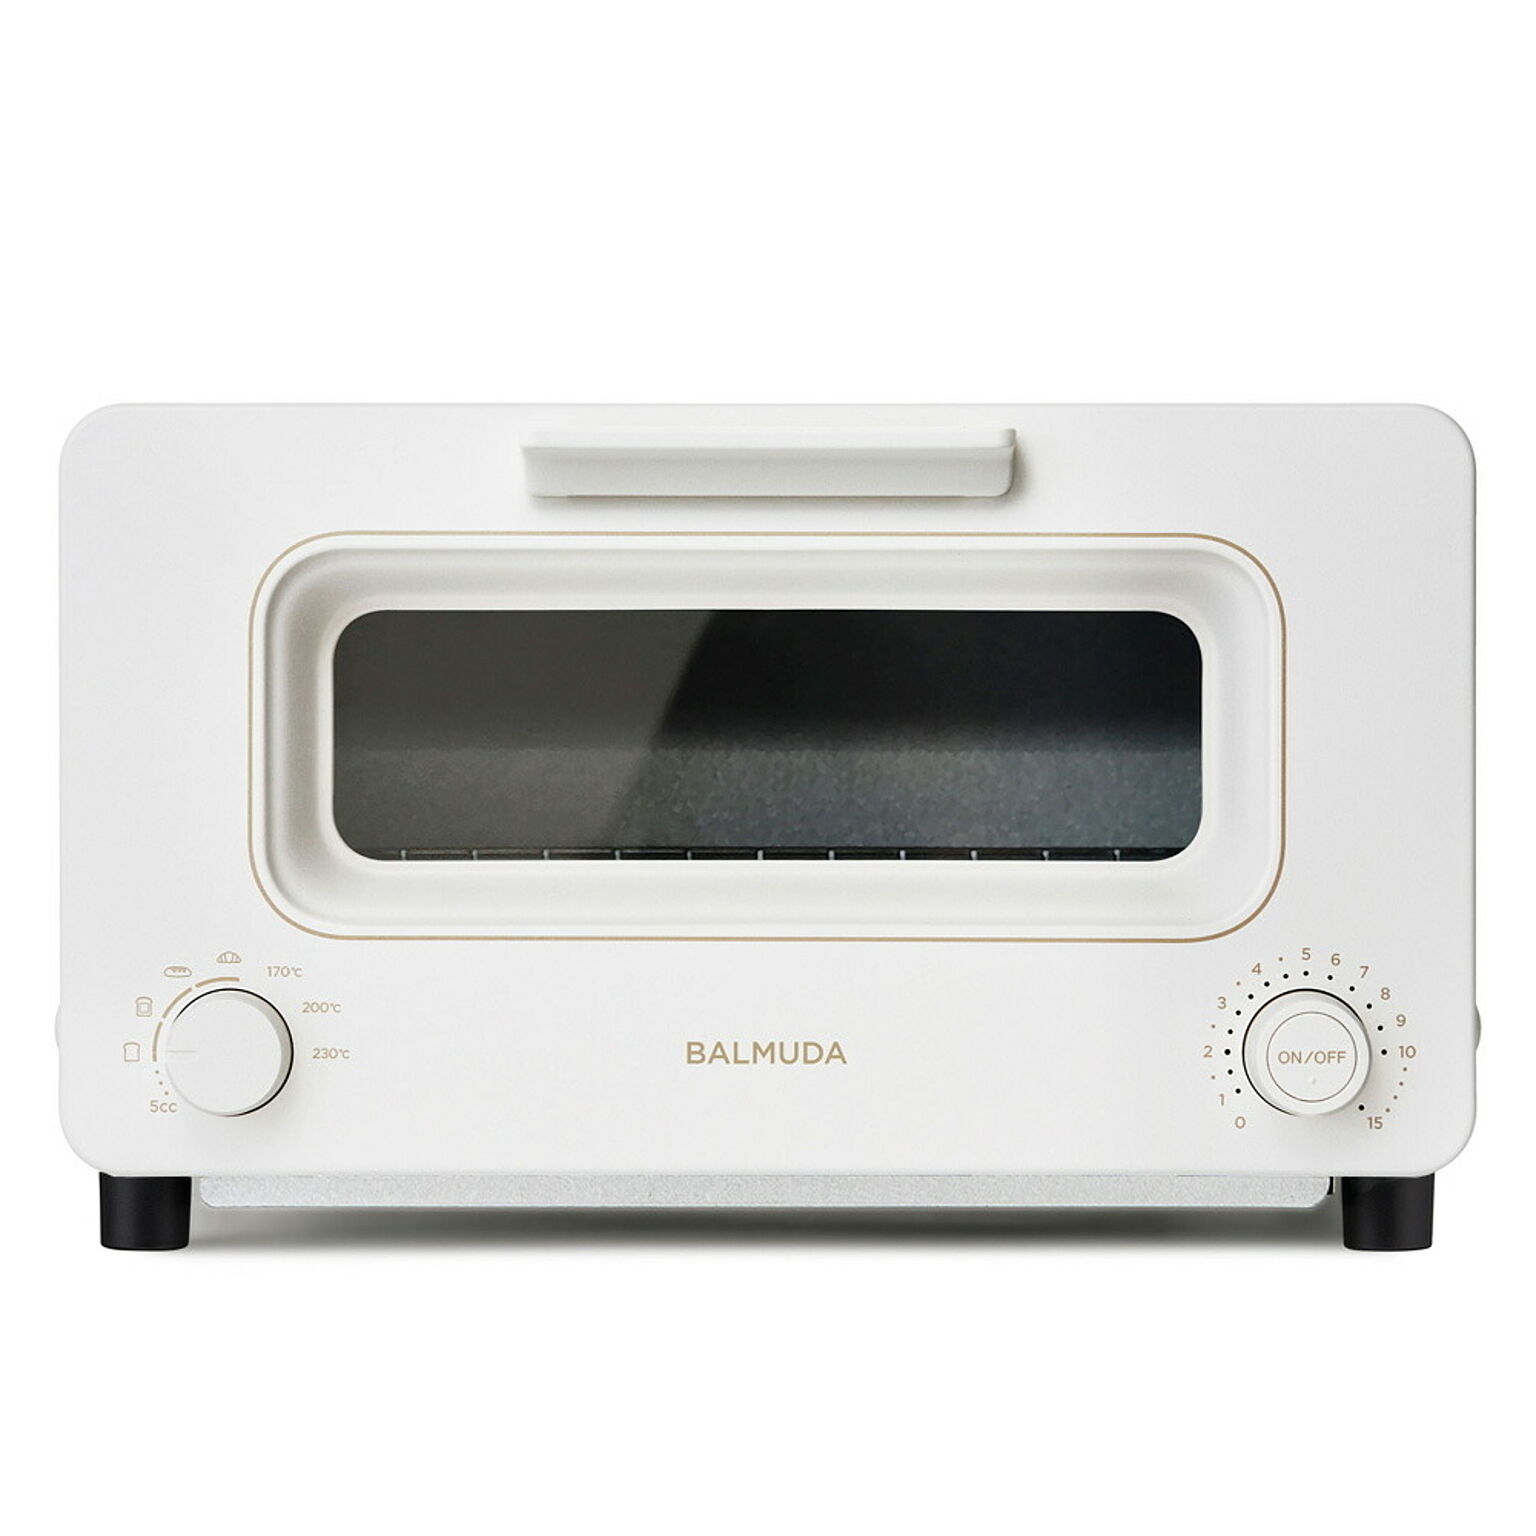 BALMUDA / The Toaster K05A